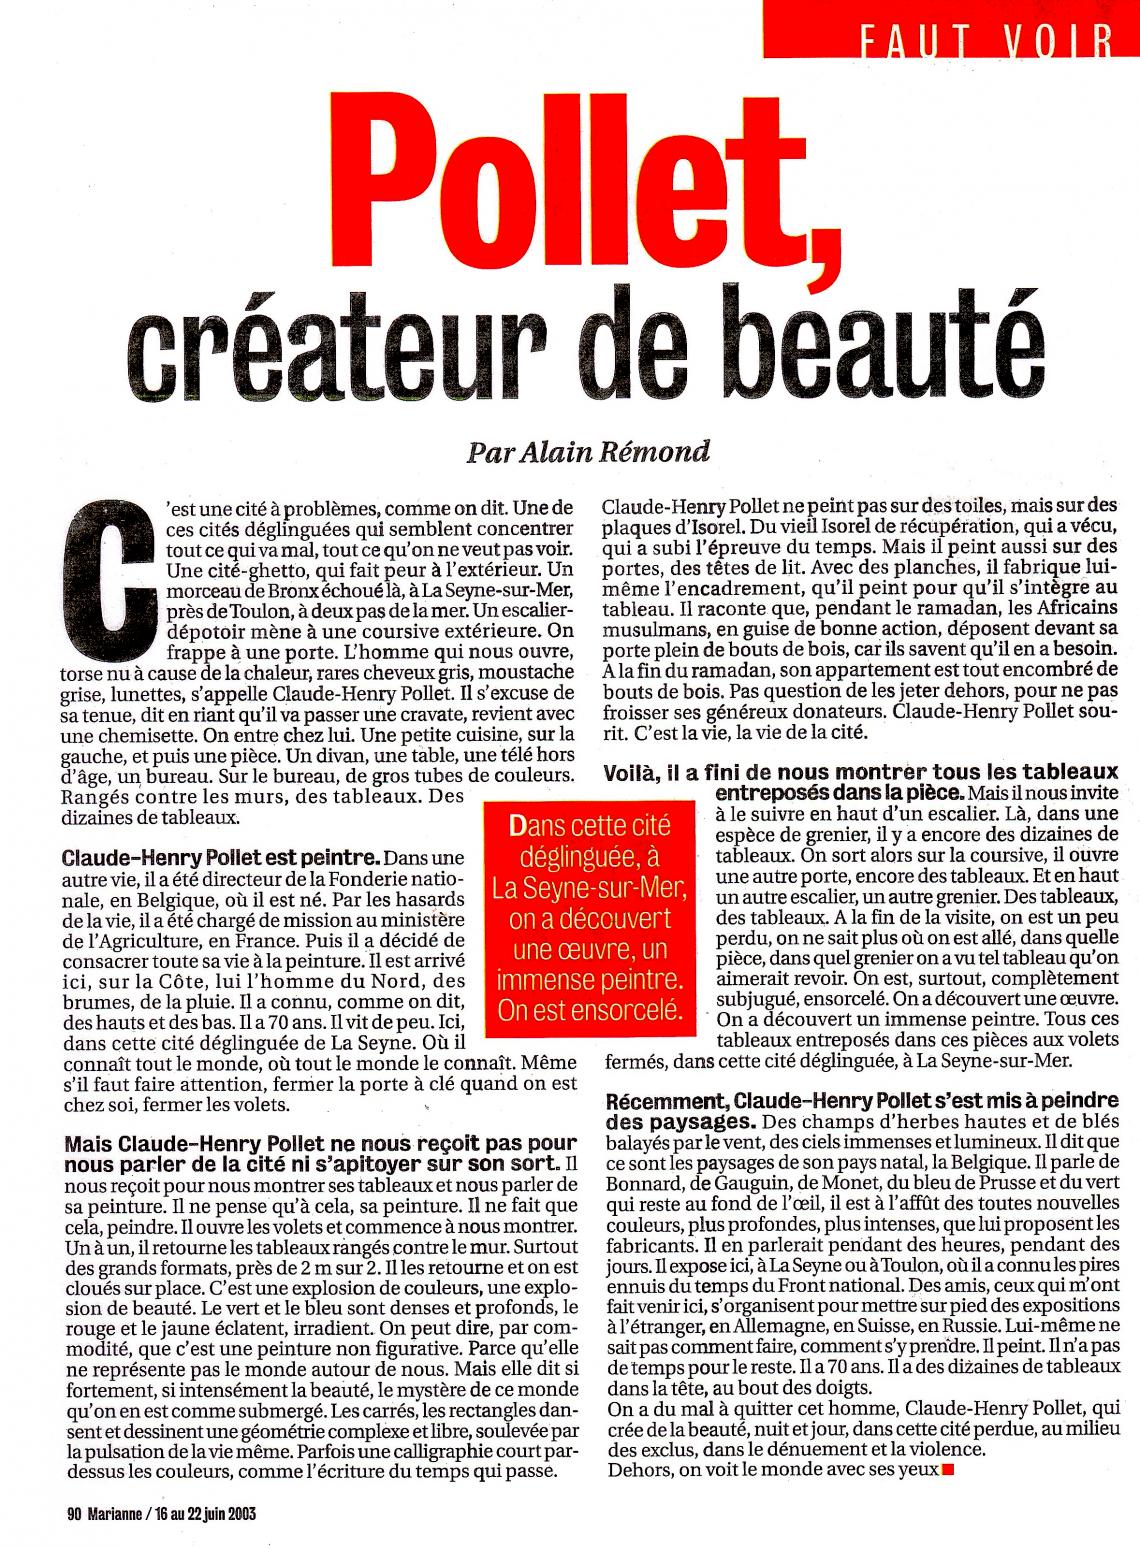 Article d’Alain Rémond, « Pollet créateur de beauté » , paru dans Marianne, du 16 au 22 juin 2003.